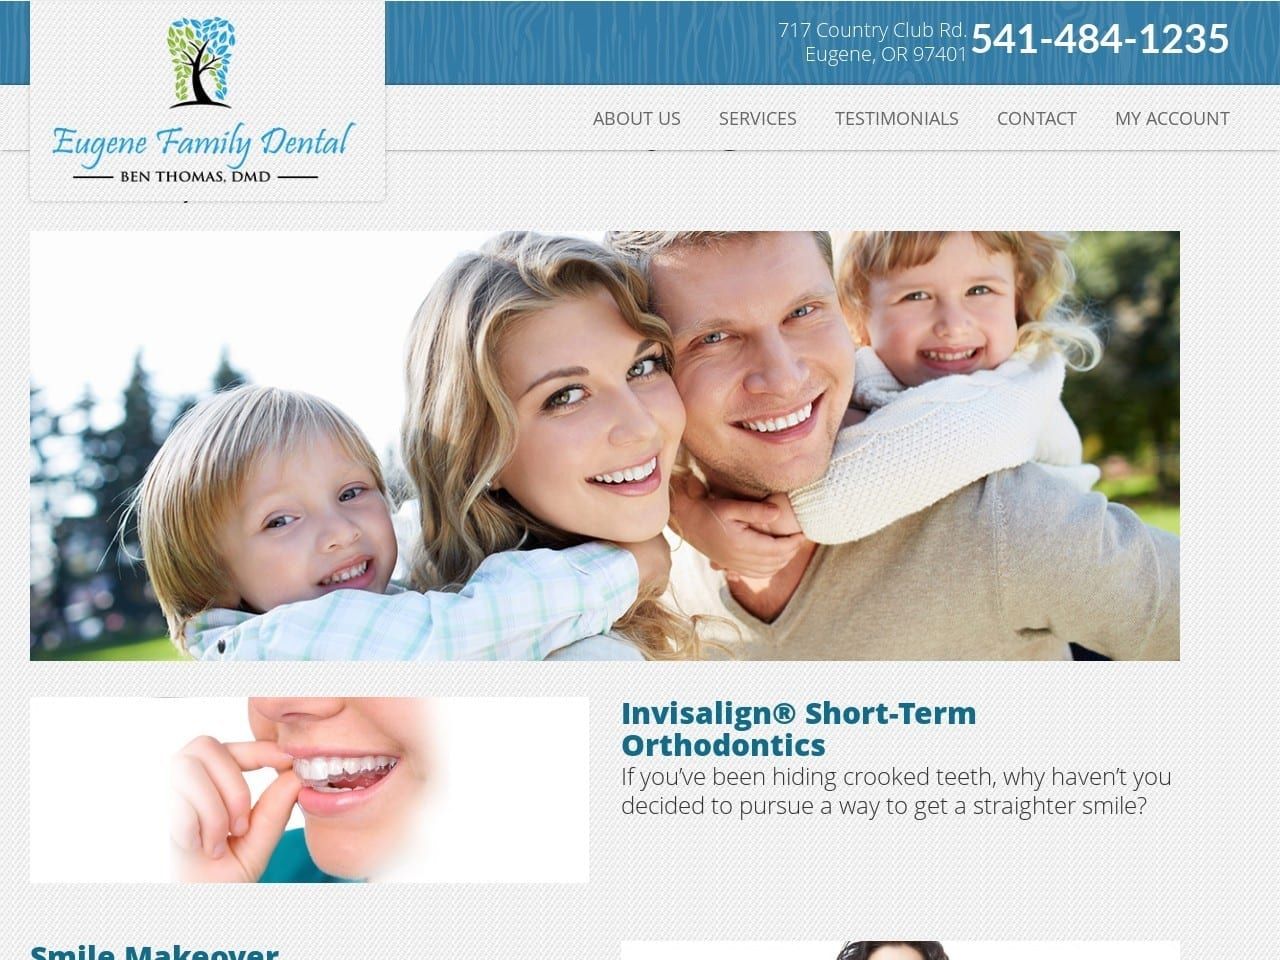 Eugene Family Dental Website Screenshot from eugenefamilydental.com